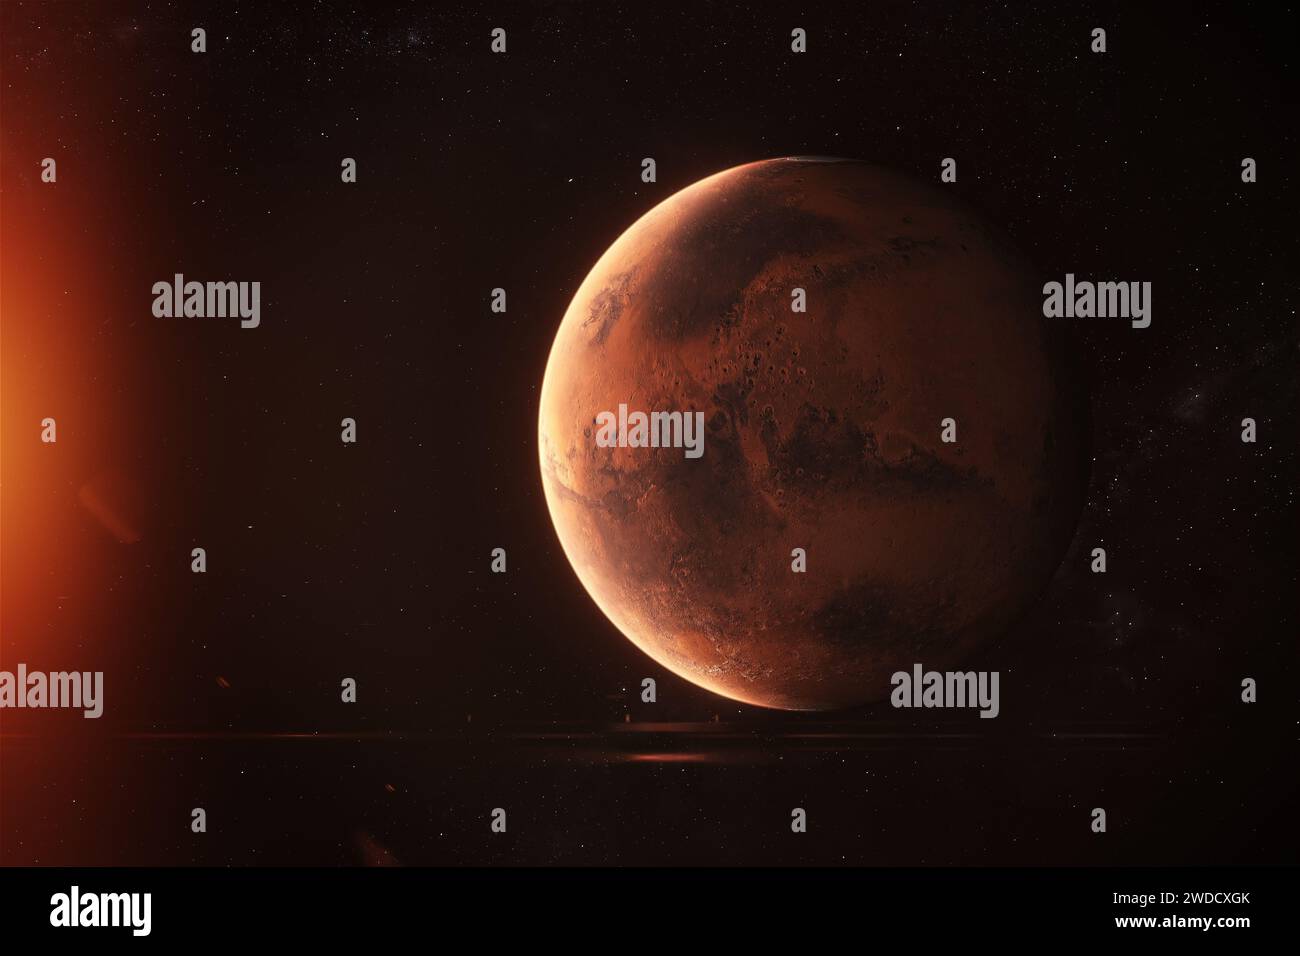 Marte - superficie del pianeta rosso. Immagine di Marte il pianeta rosso. Foto Stock